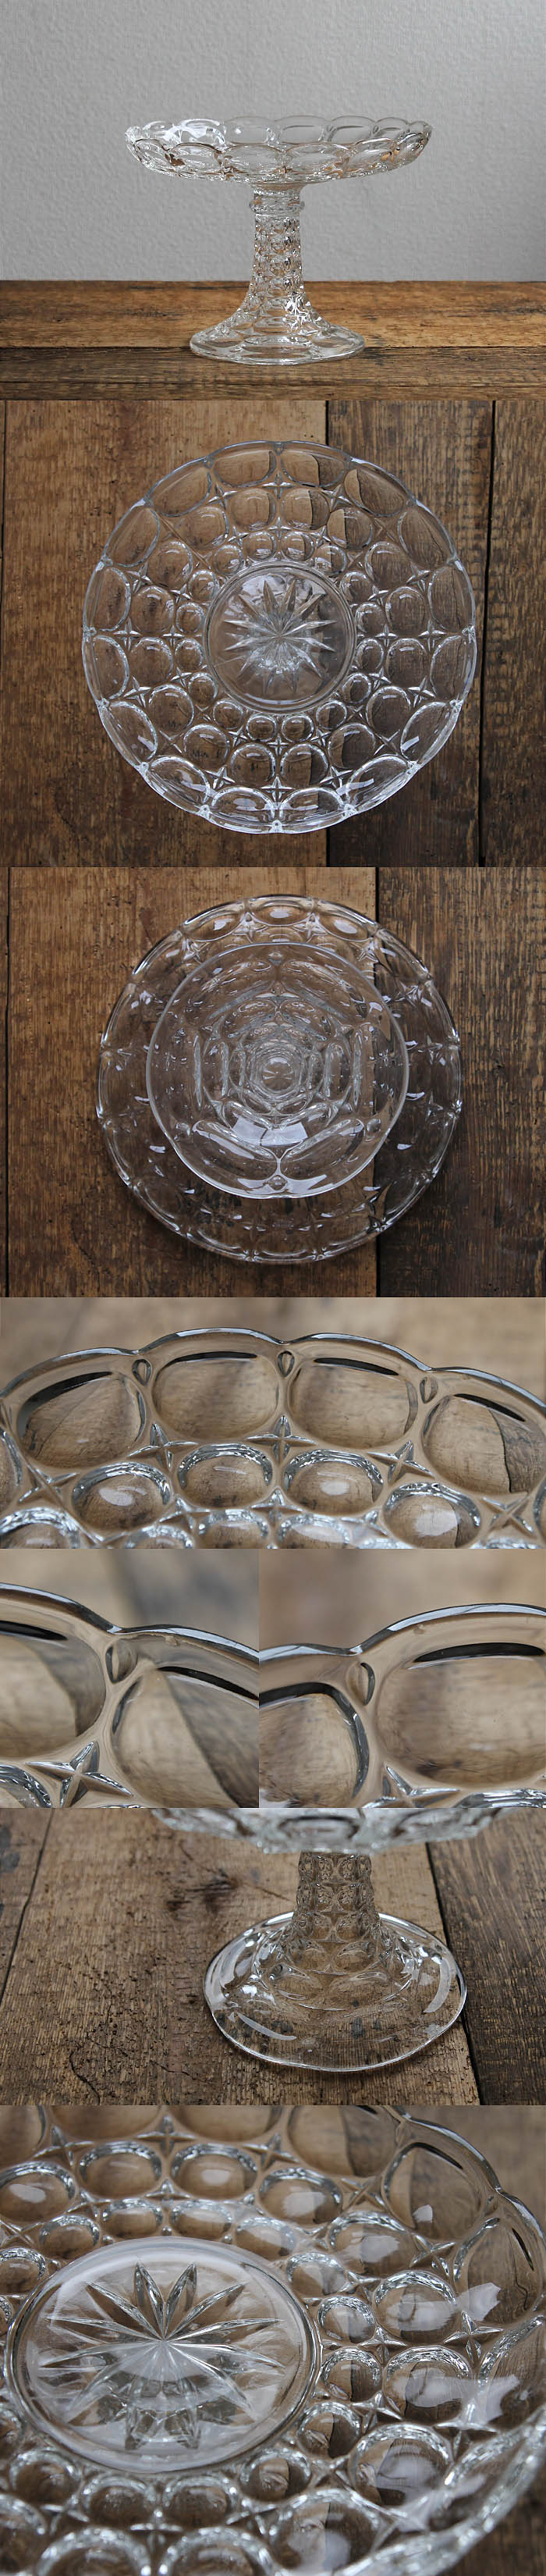 イギリス アンティーク ガラスケーキスタンド コンポート皿 食器 インテリア雑貨「プレスガラス」P-024